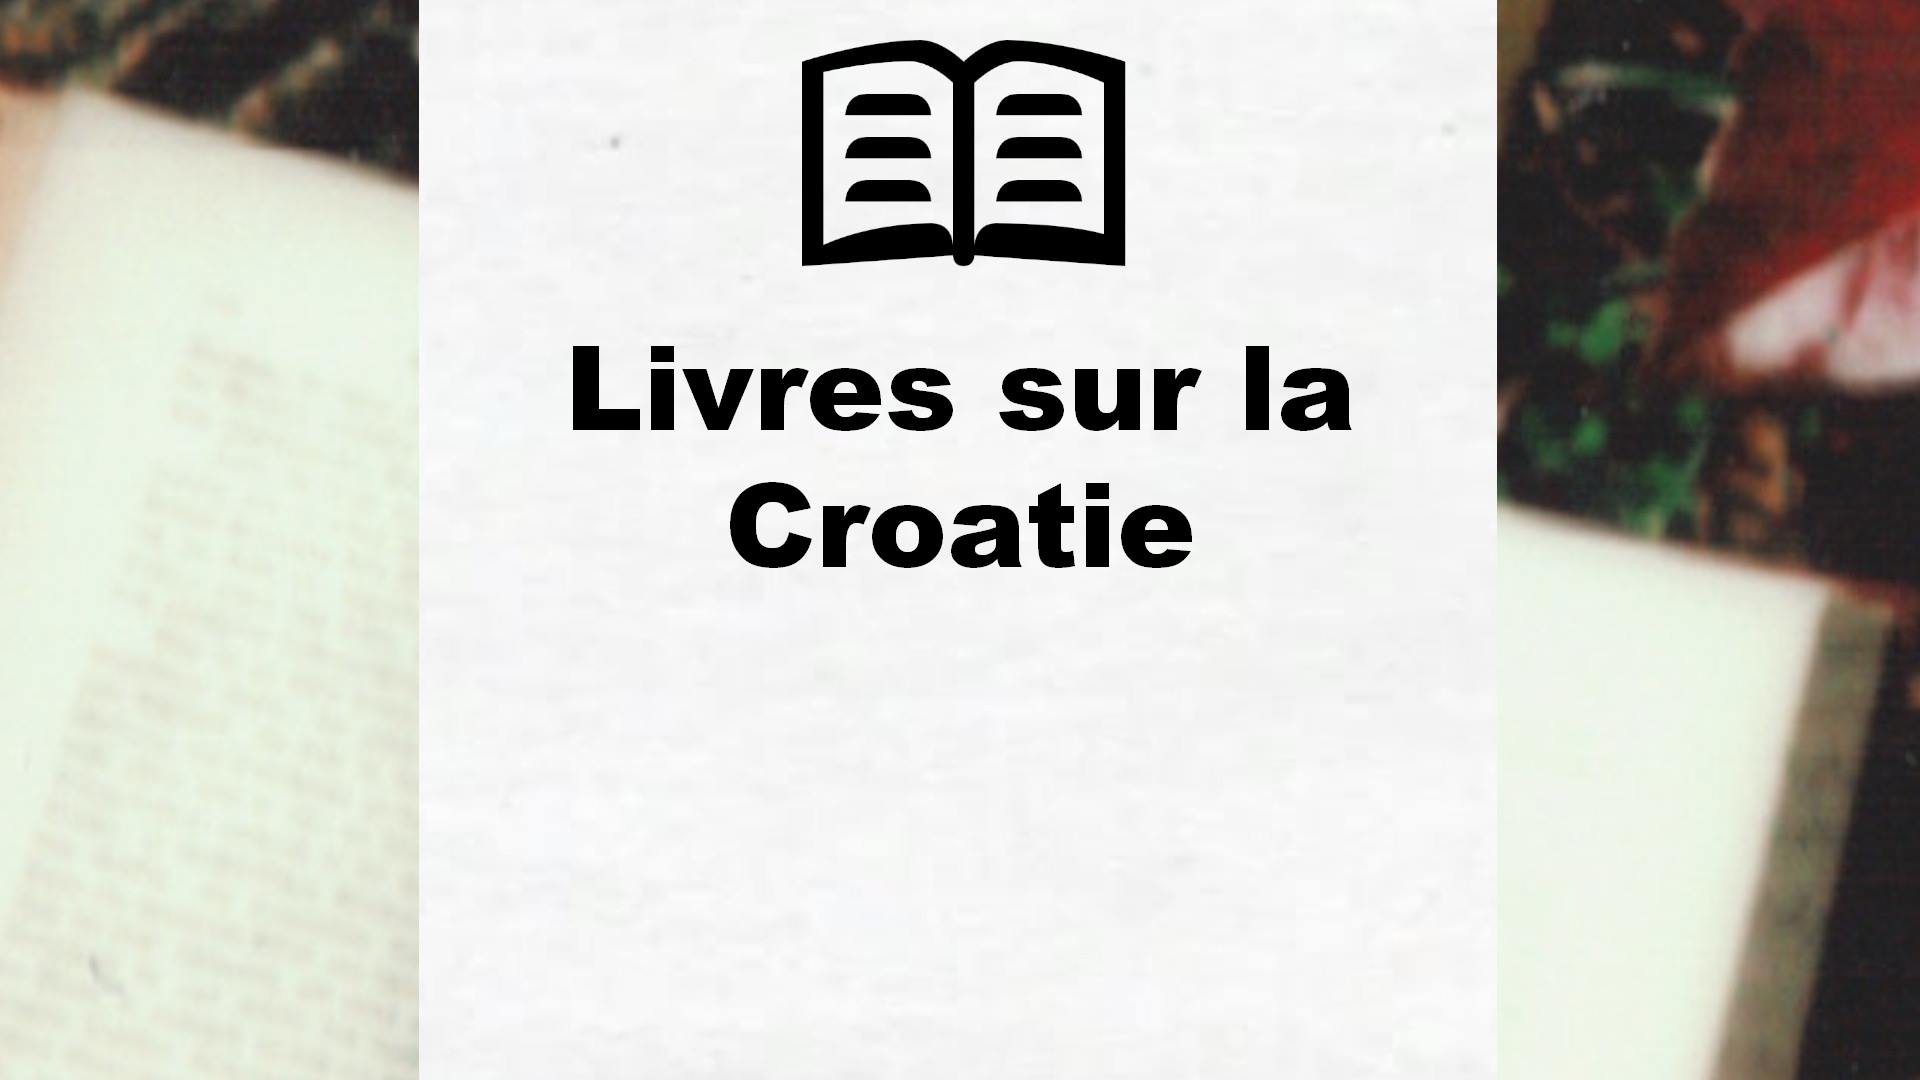 Livres sur la Croatie